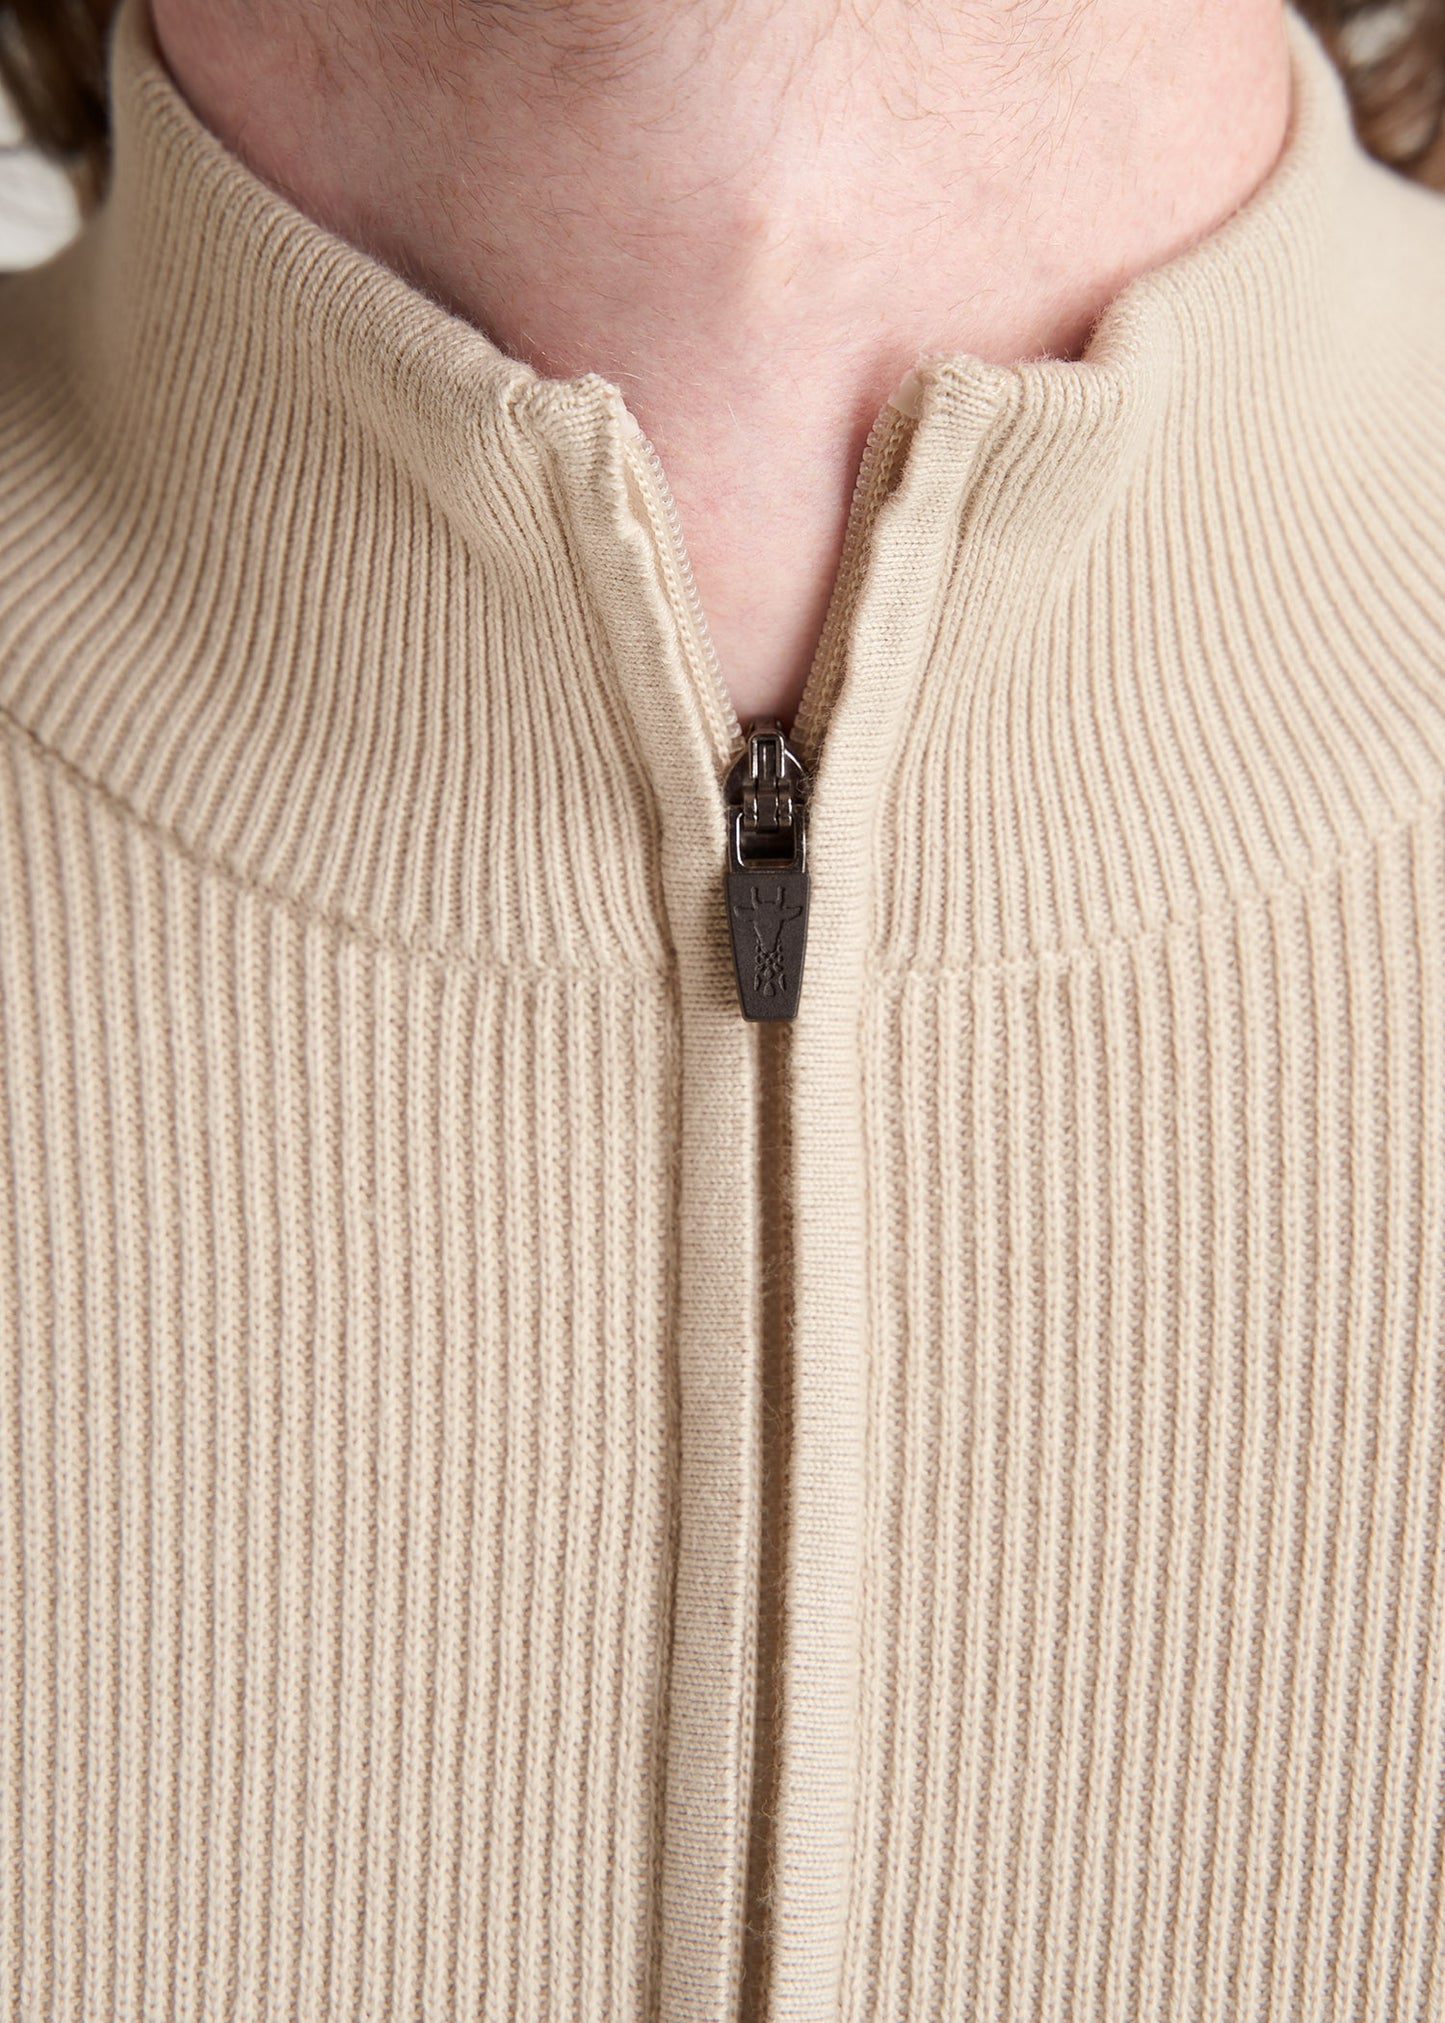 American-Tall-Men-FullZip-Sweater-BeigeMix-detail